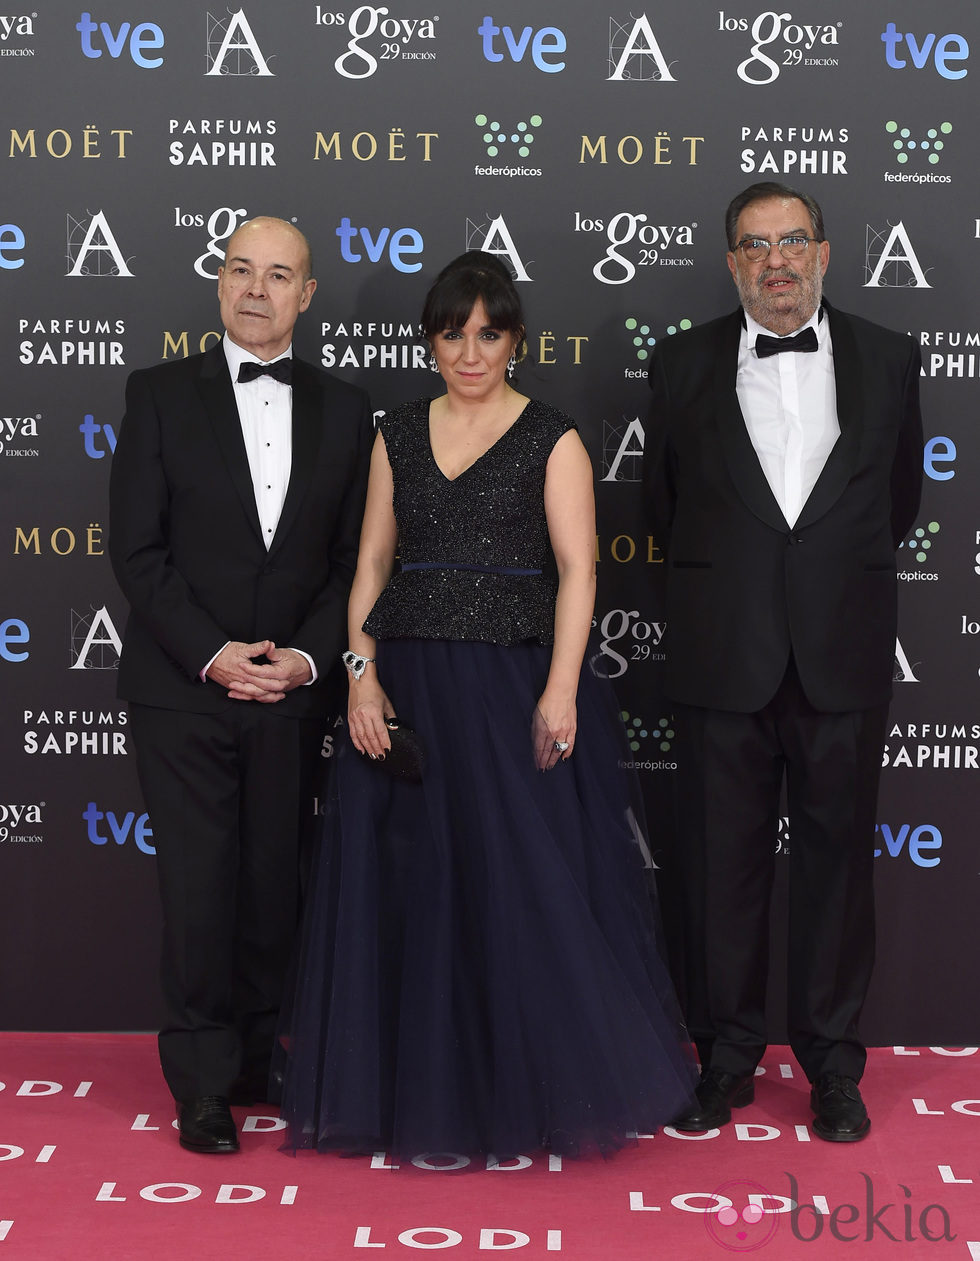 Antonio Resines, Judith Colell y Enrique González Macho en la alfombra roja de los Goya 2015